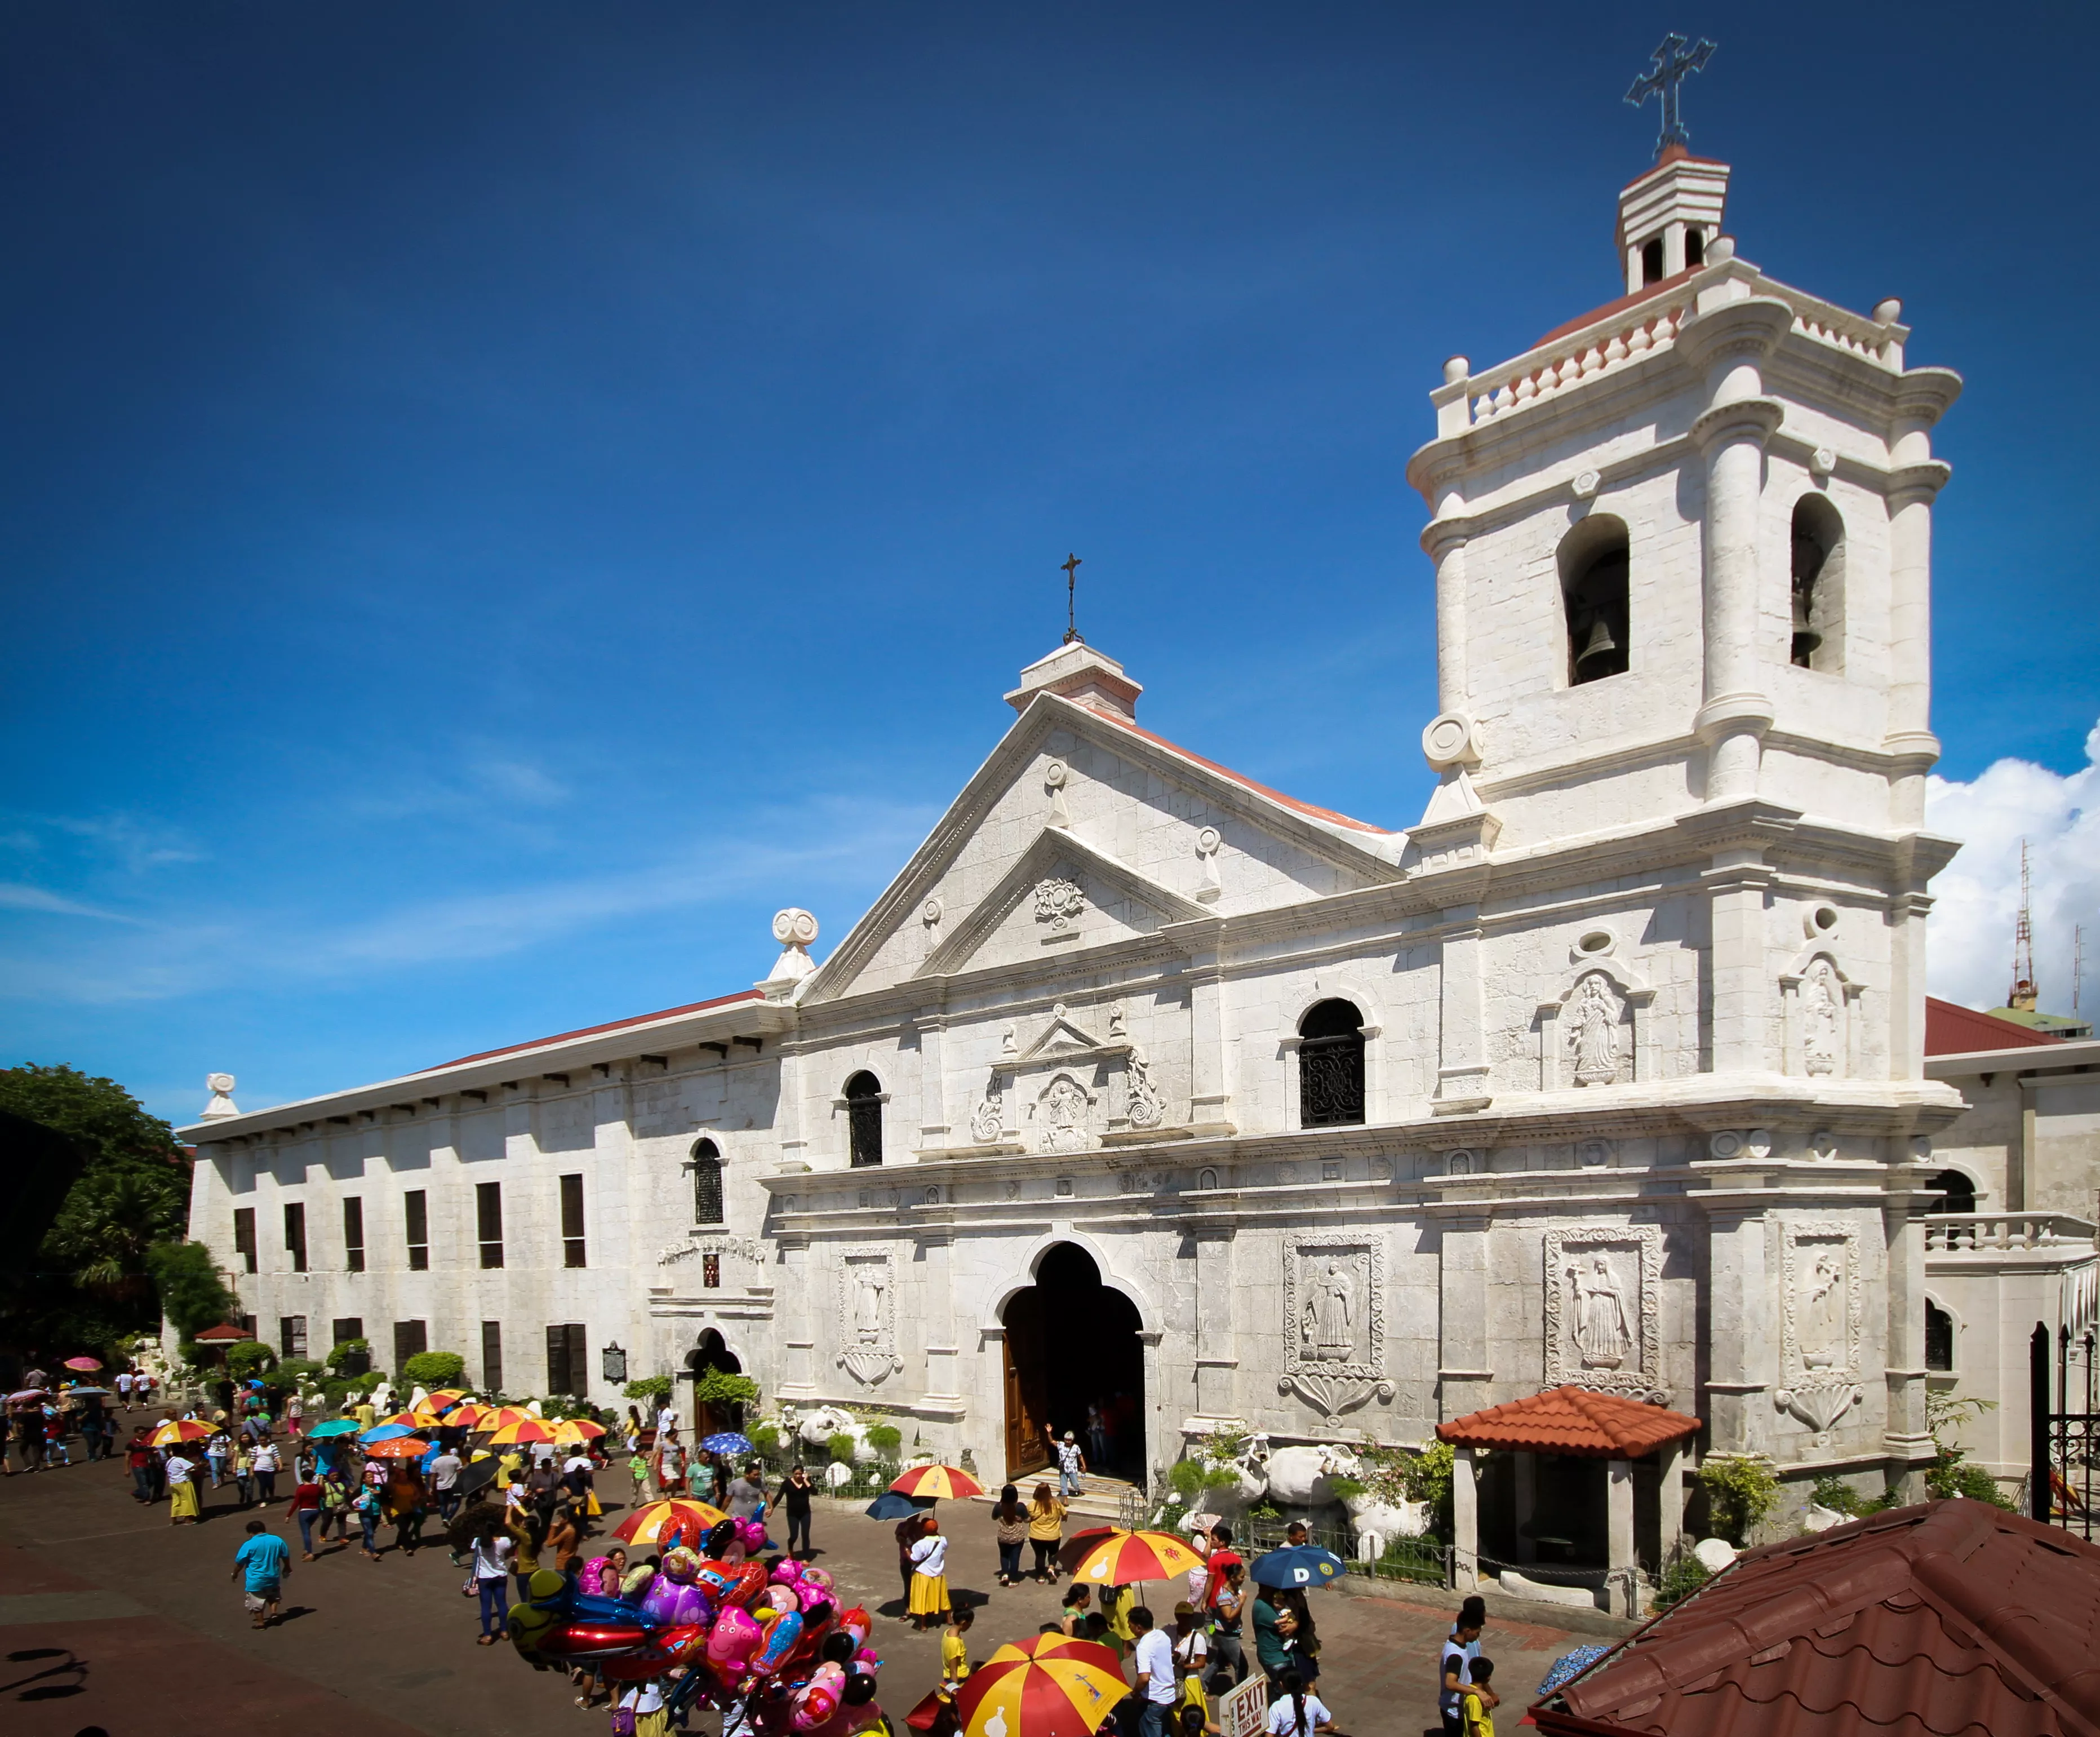 Basilica Minore del Santo Nino in Philippines, Central Asia | Architecture - Rated 3.9